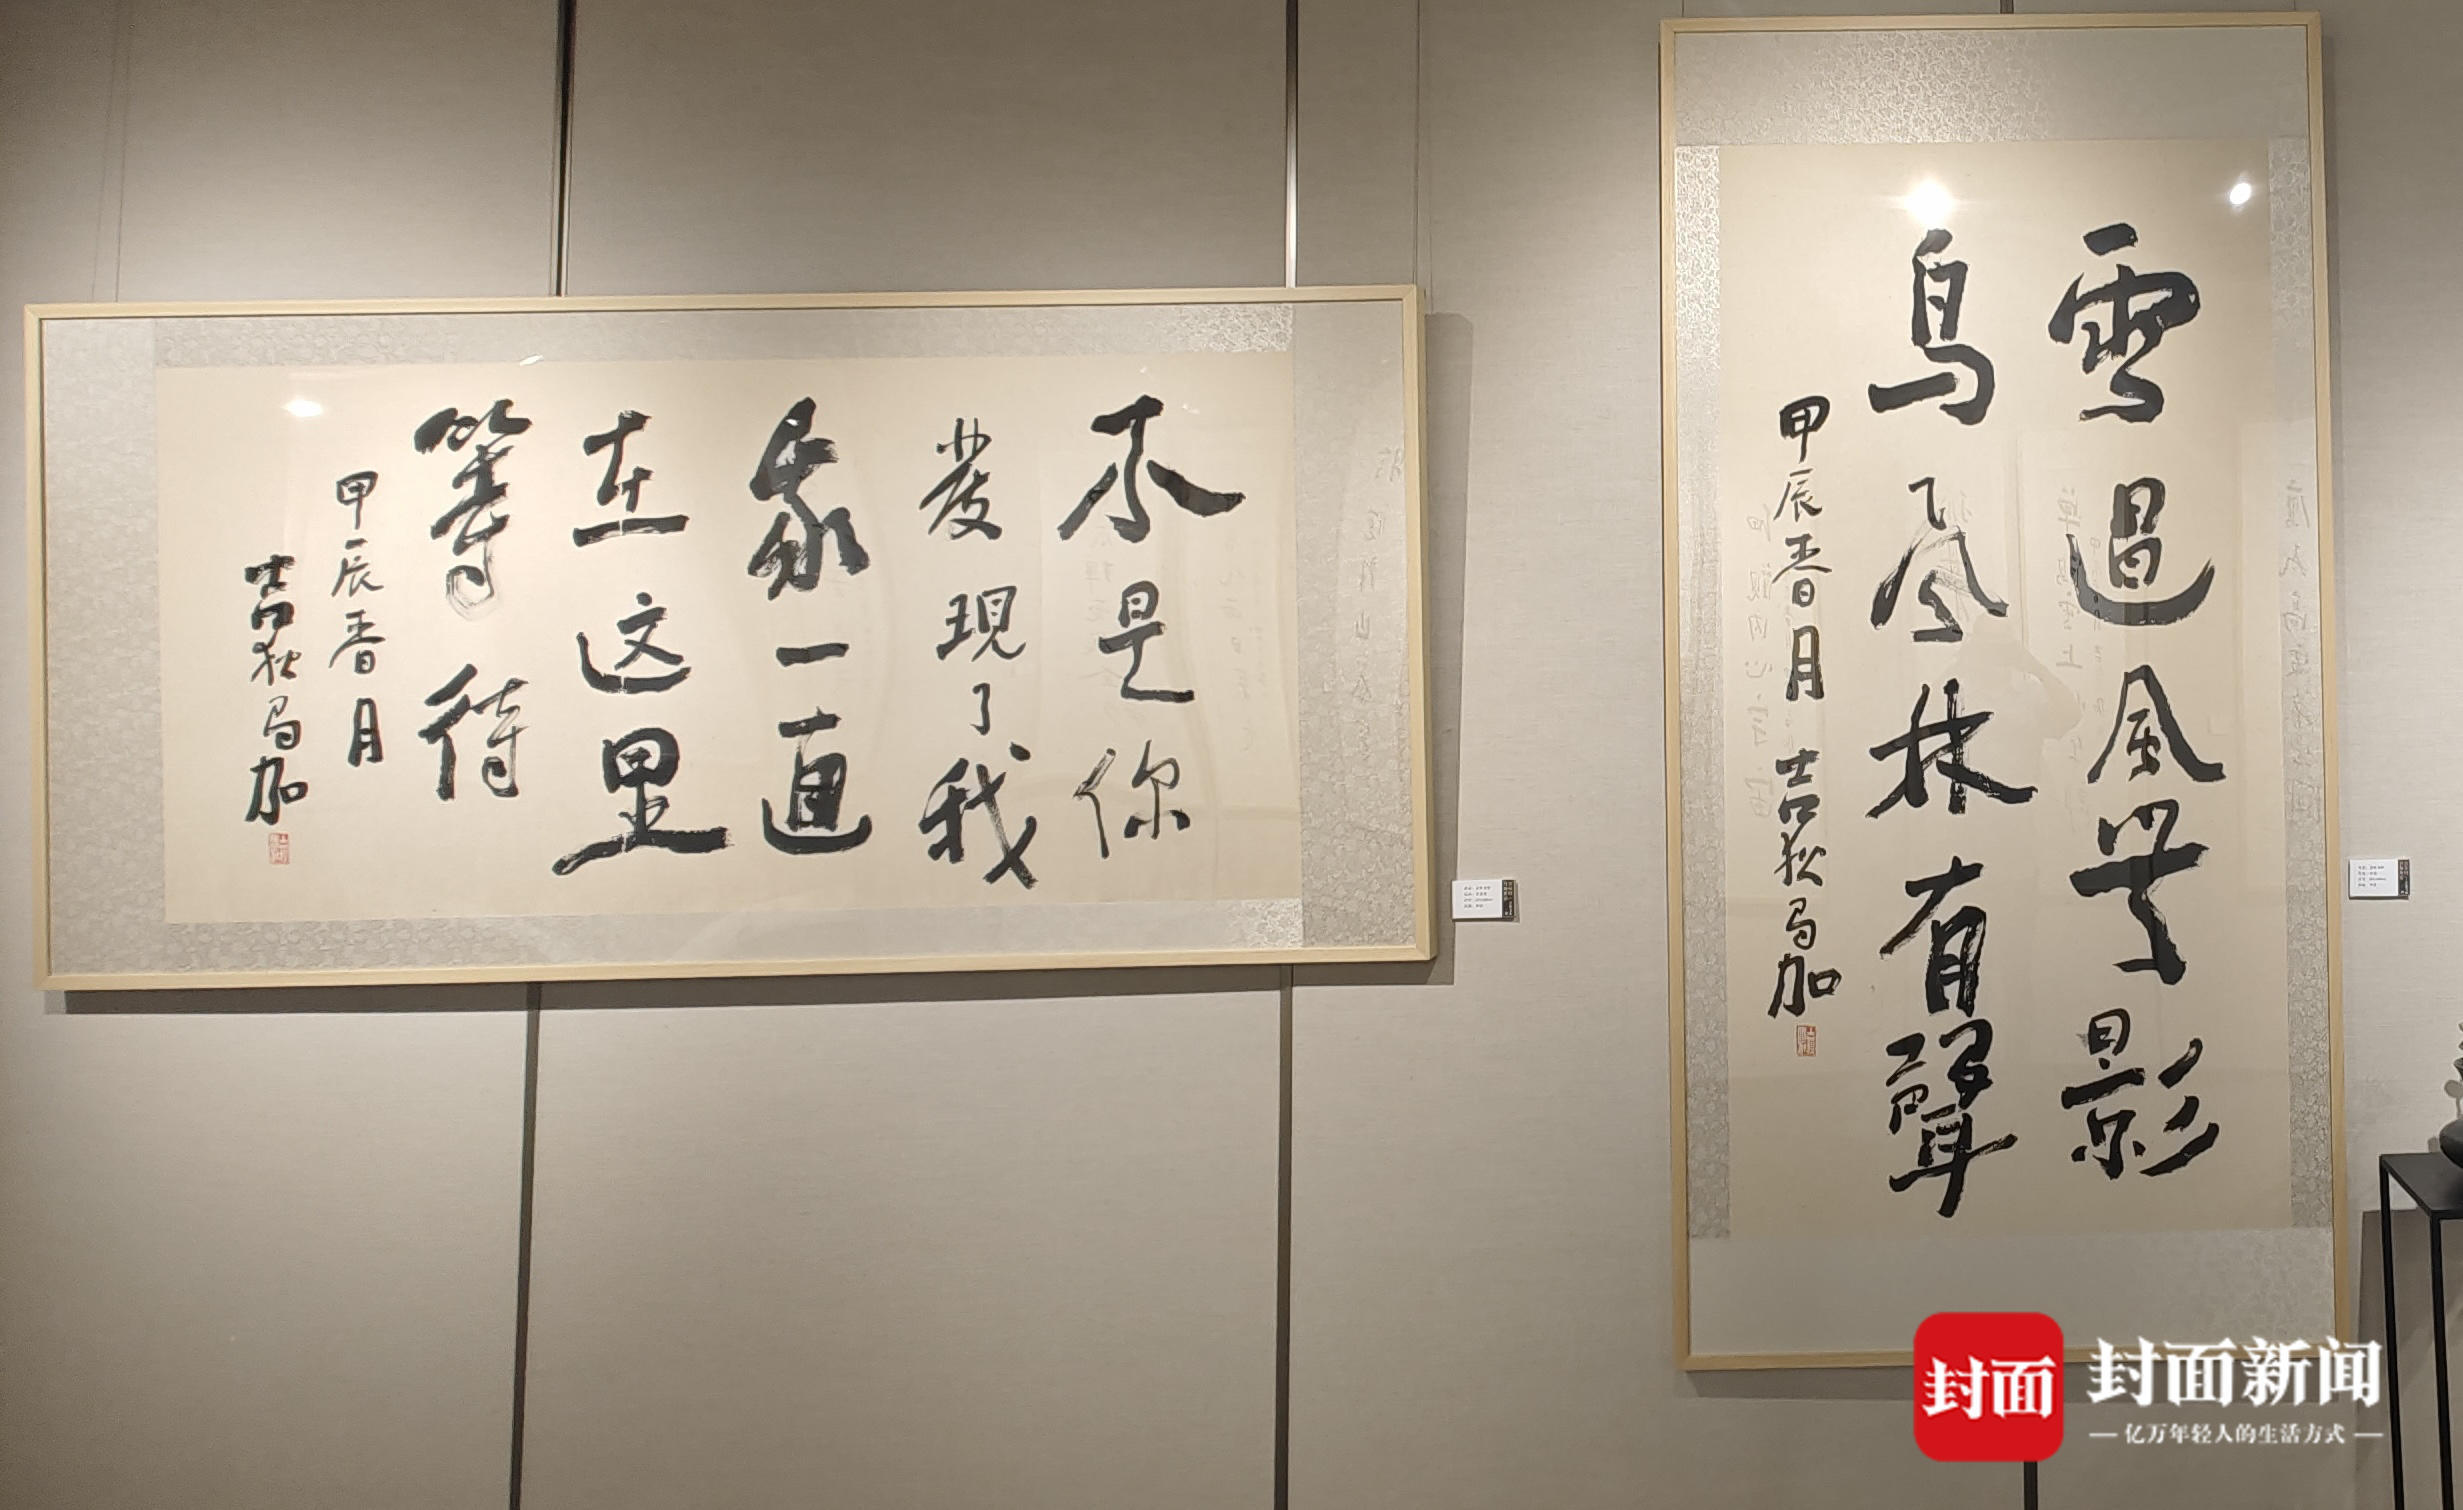 用诗歌、书法、绘画承载哲思 吉狄马加首个“诗歌书法绘画展”上海开幕